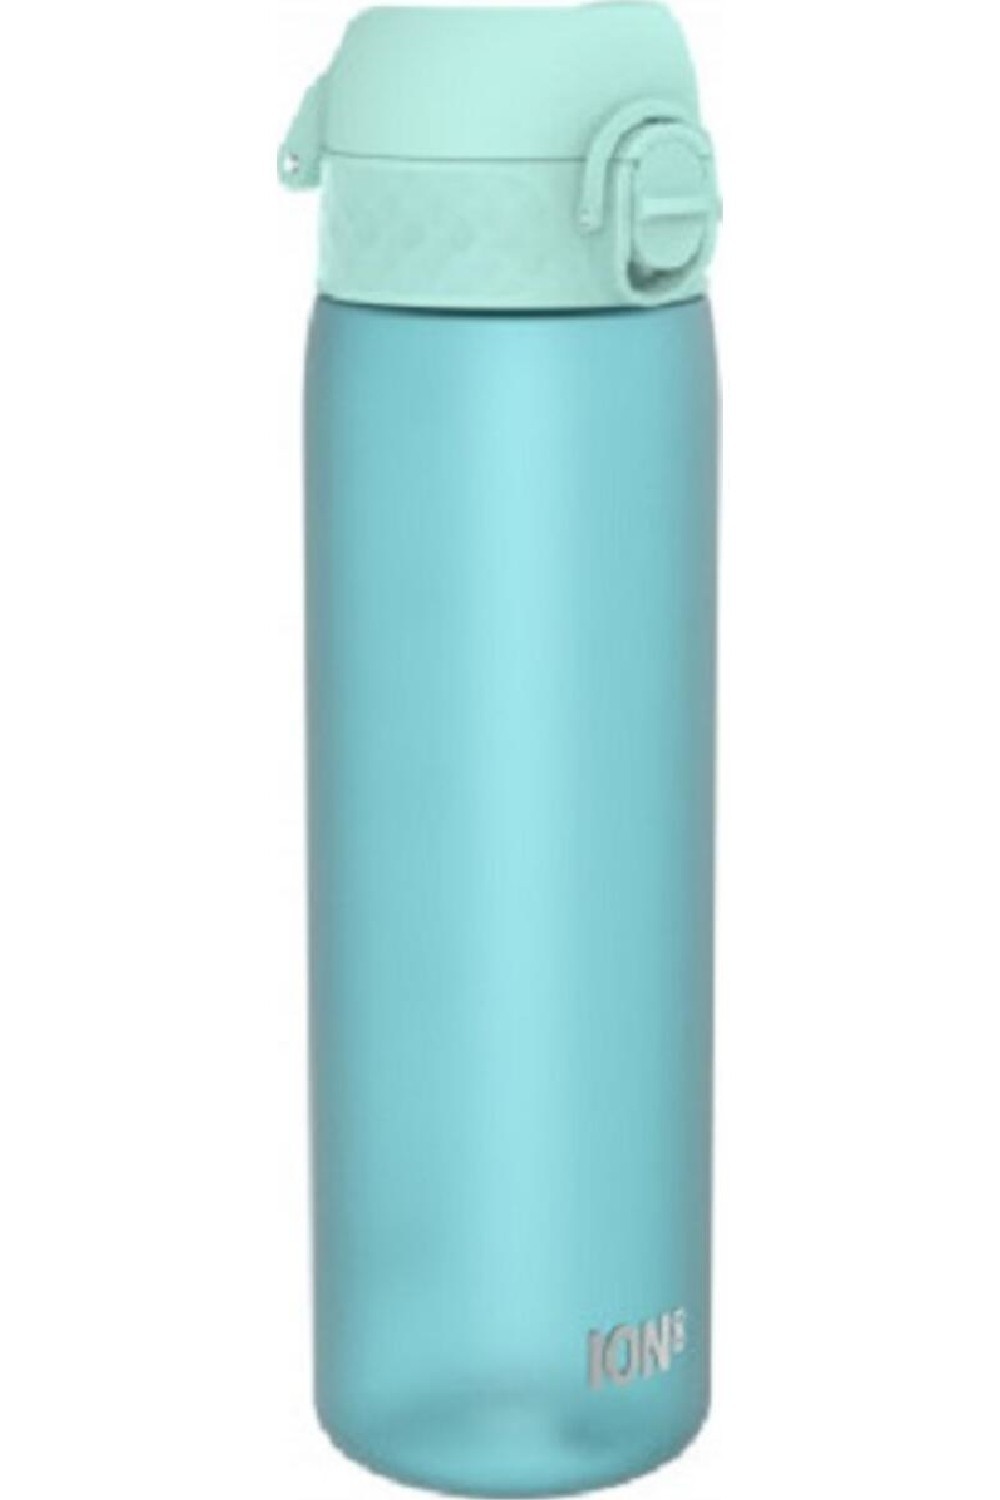 Πλαστικό Παγούρι Slim 500ml Γαλάζιο Light, Ion8